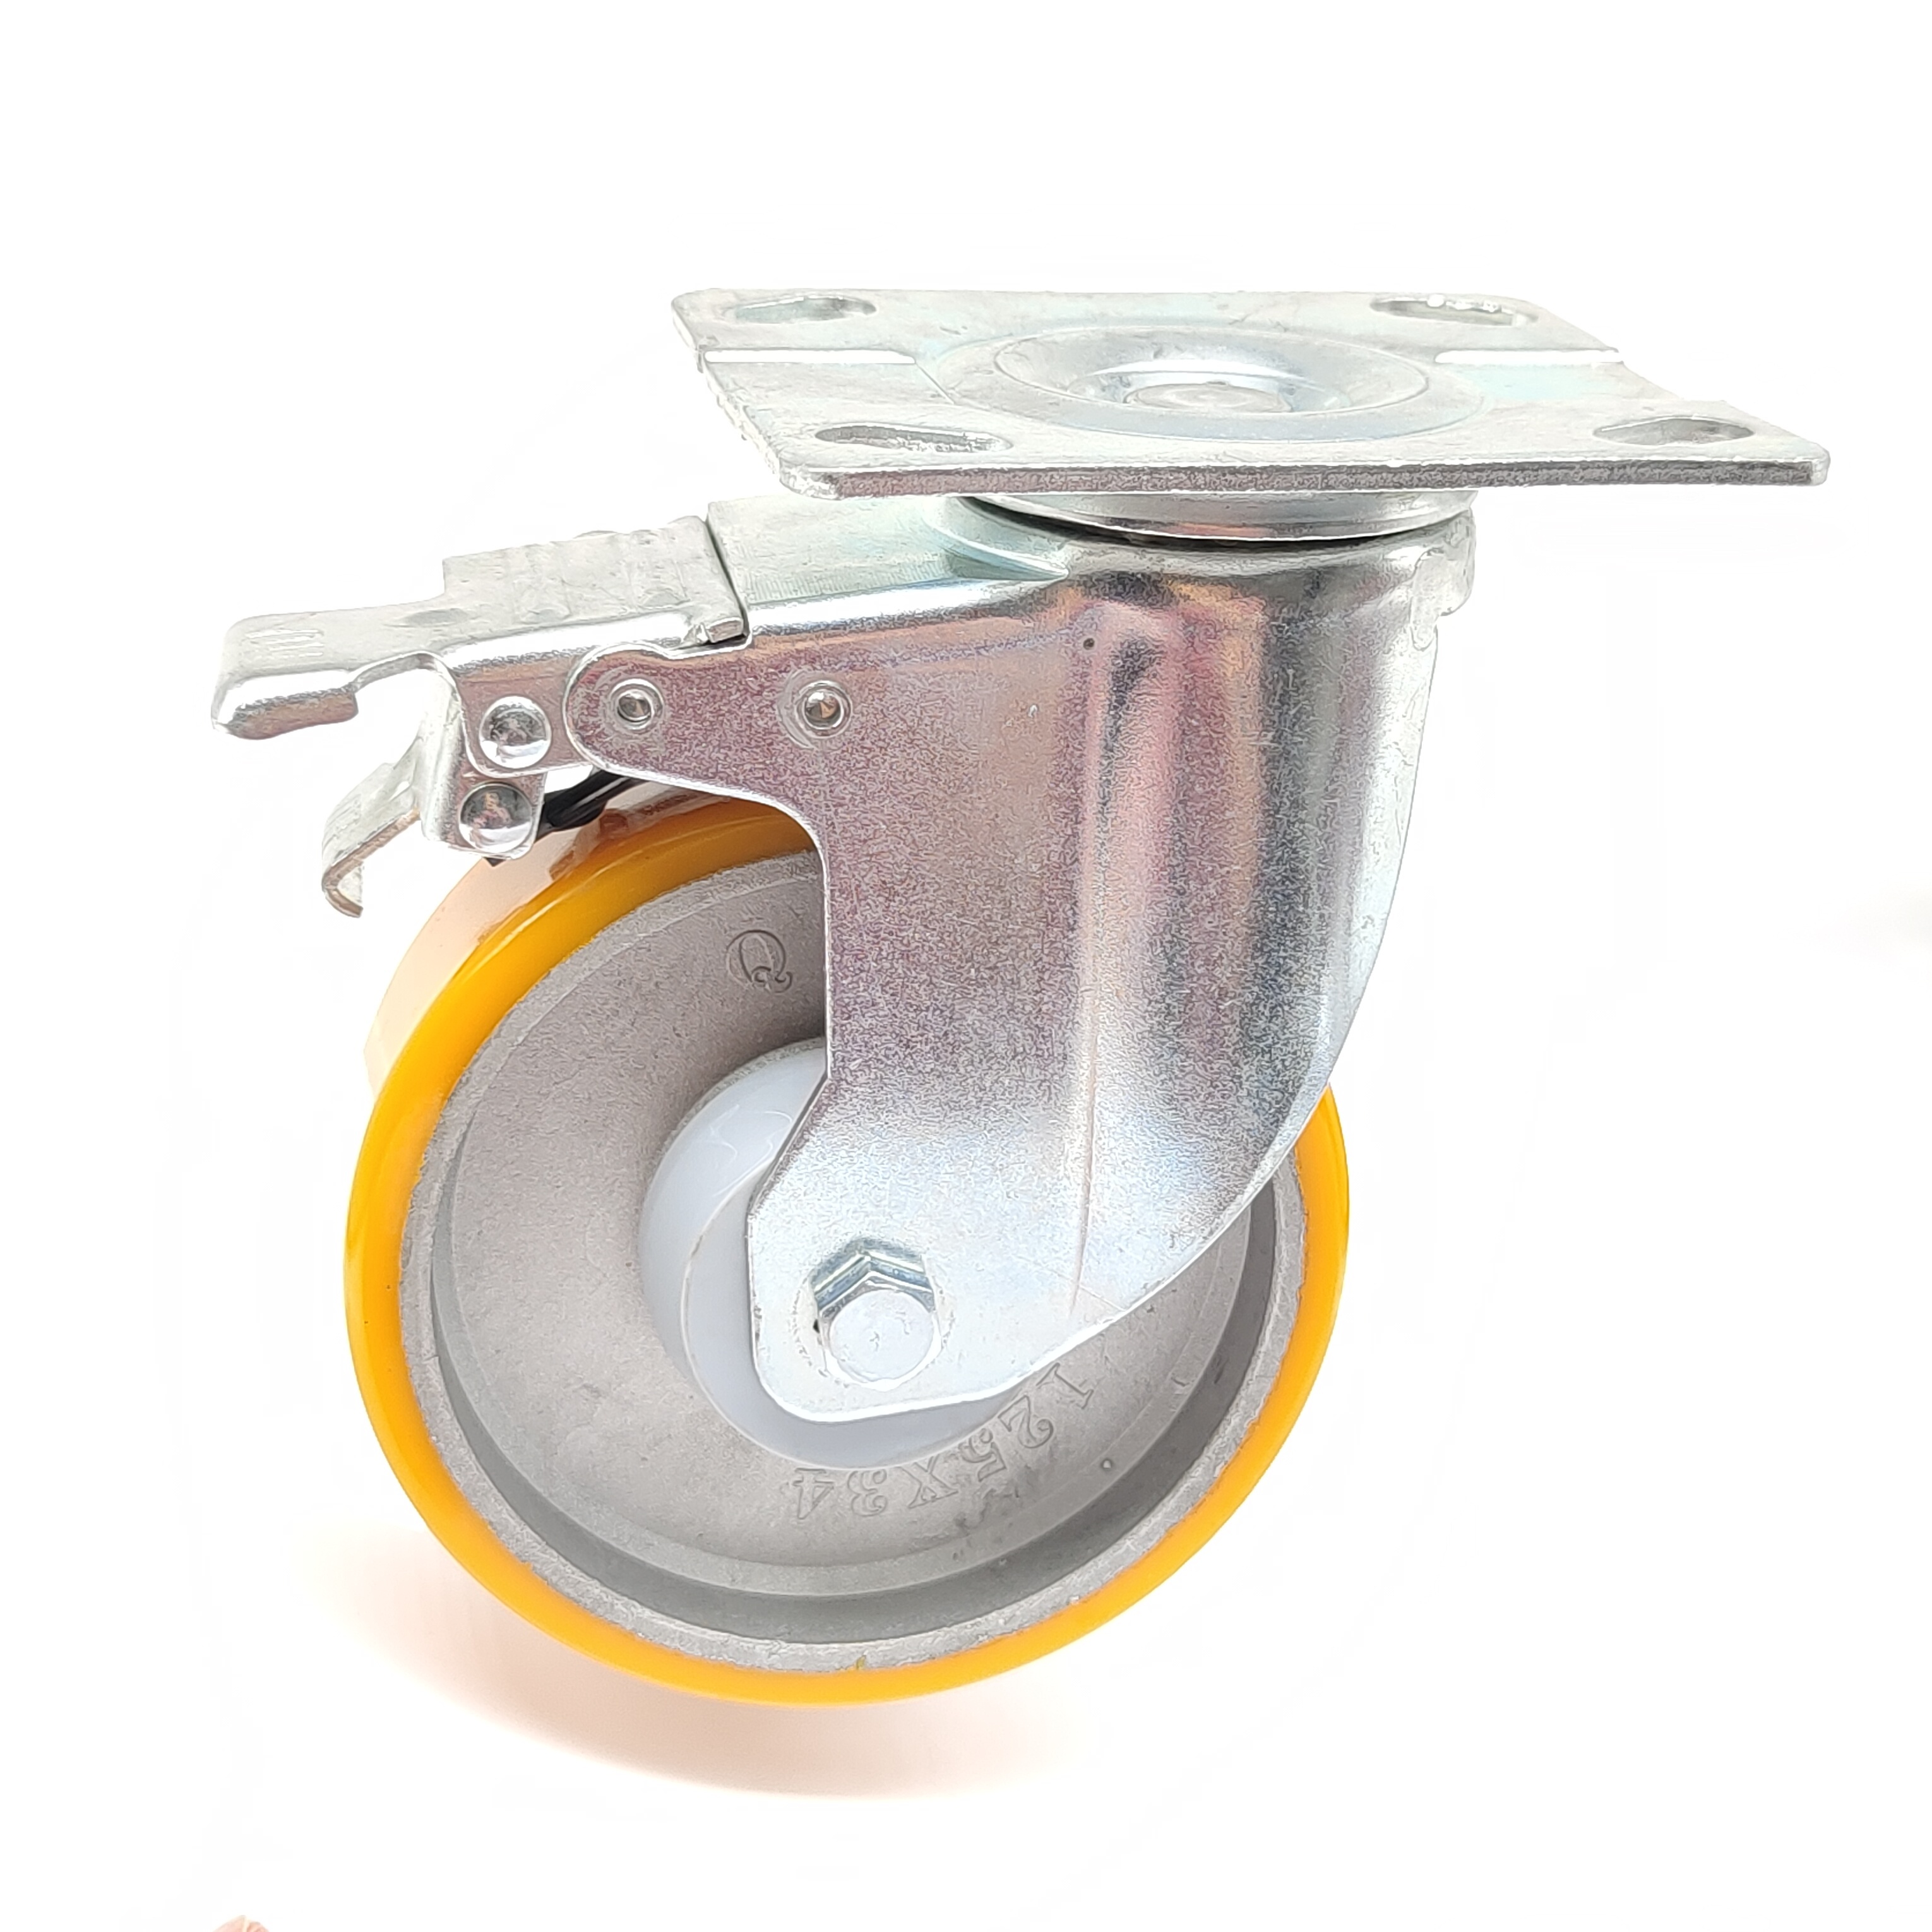 5 inča 125 mm srednje teške snage 300 kg nosivosti rotirajući aluminijski obod poliuretanski PU kotači za ručna kolica